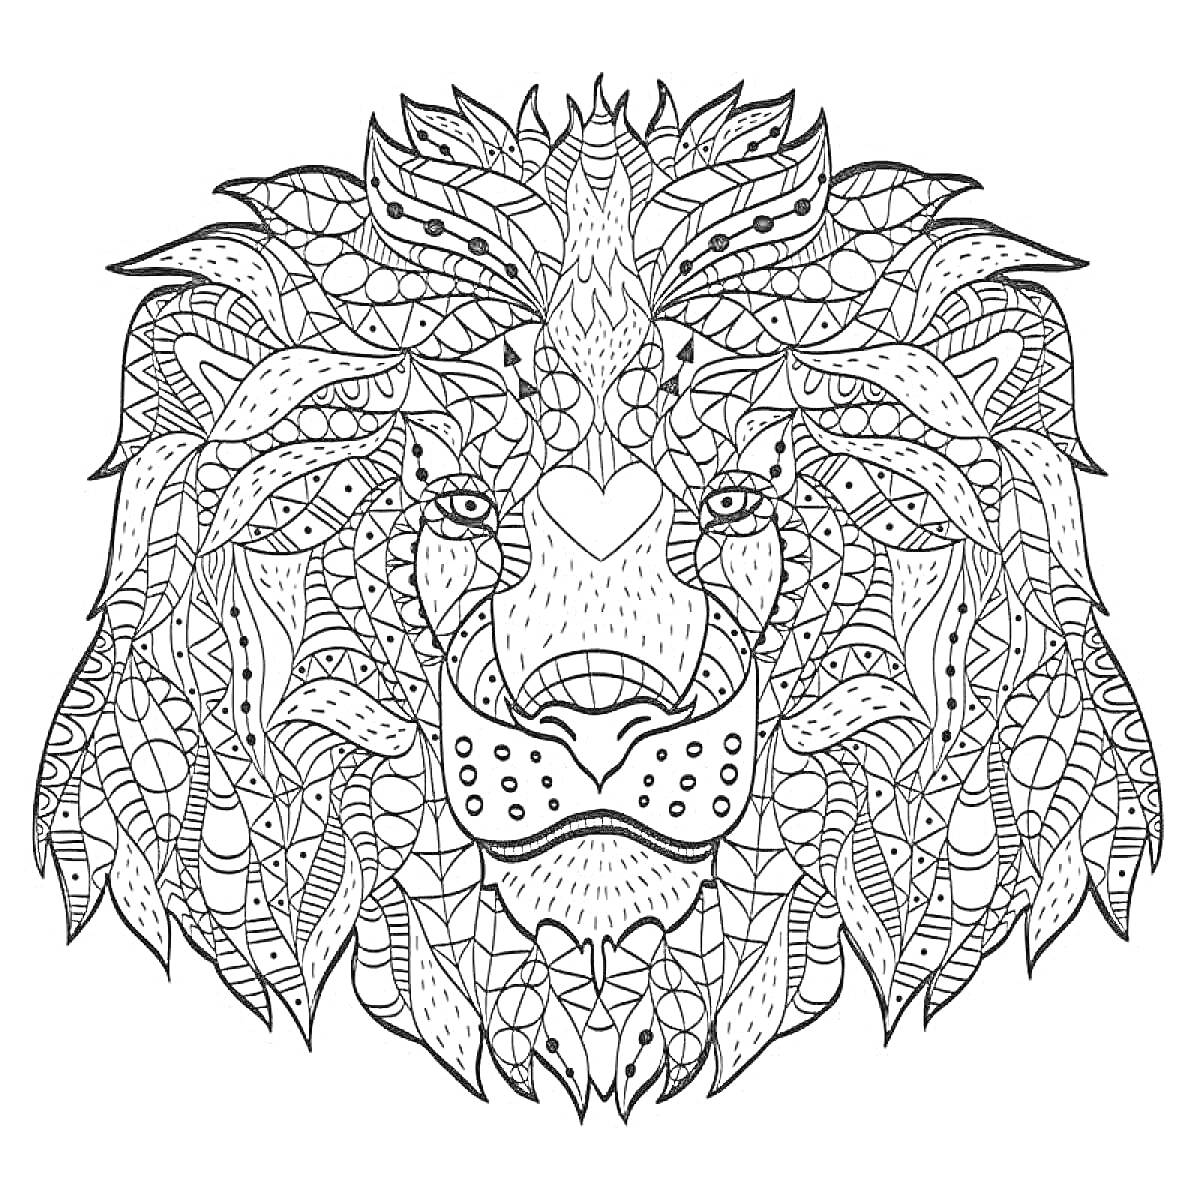 Раскраска Антистресс раскраска с оригинальным узором львиного лица и множеством мелких деталей, включая геометрические формы, линии и текстуры.